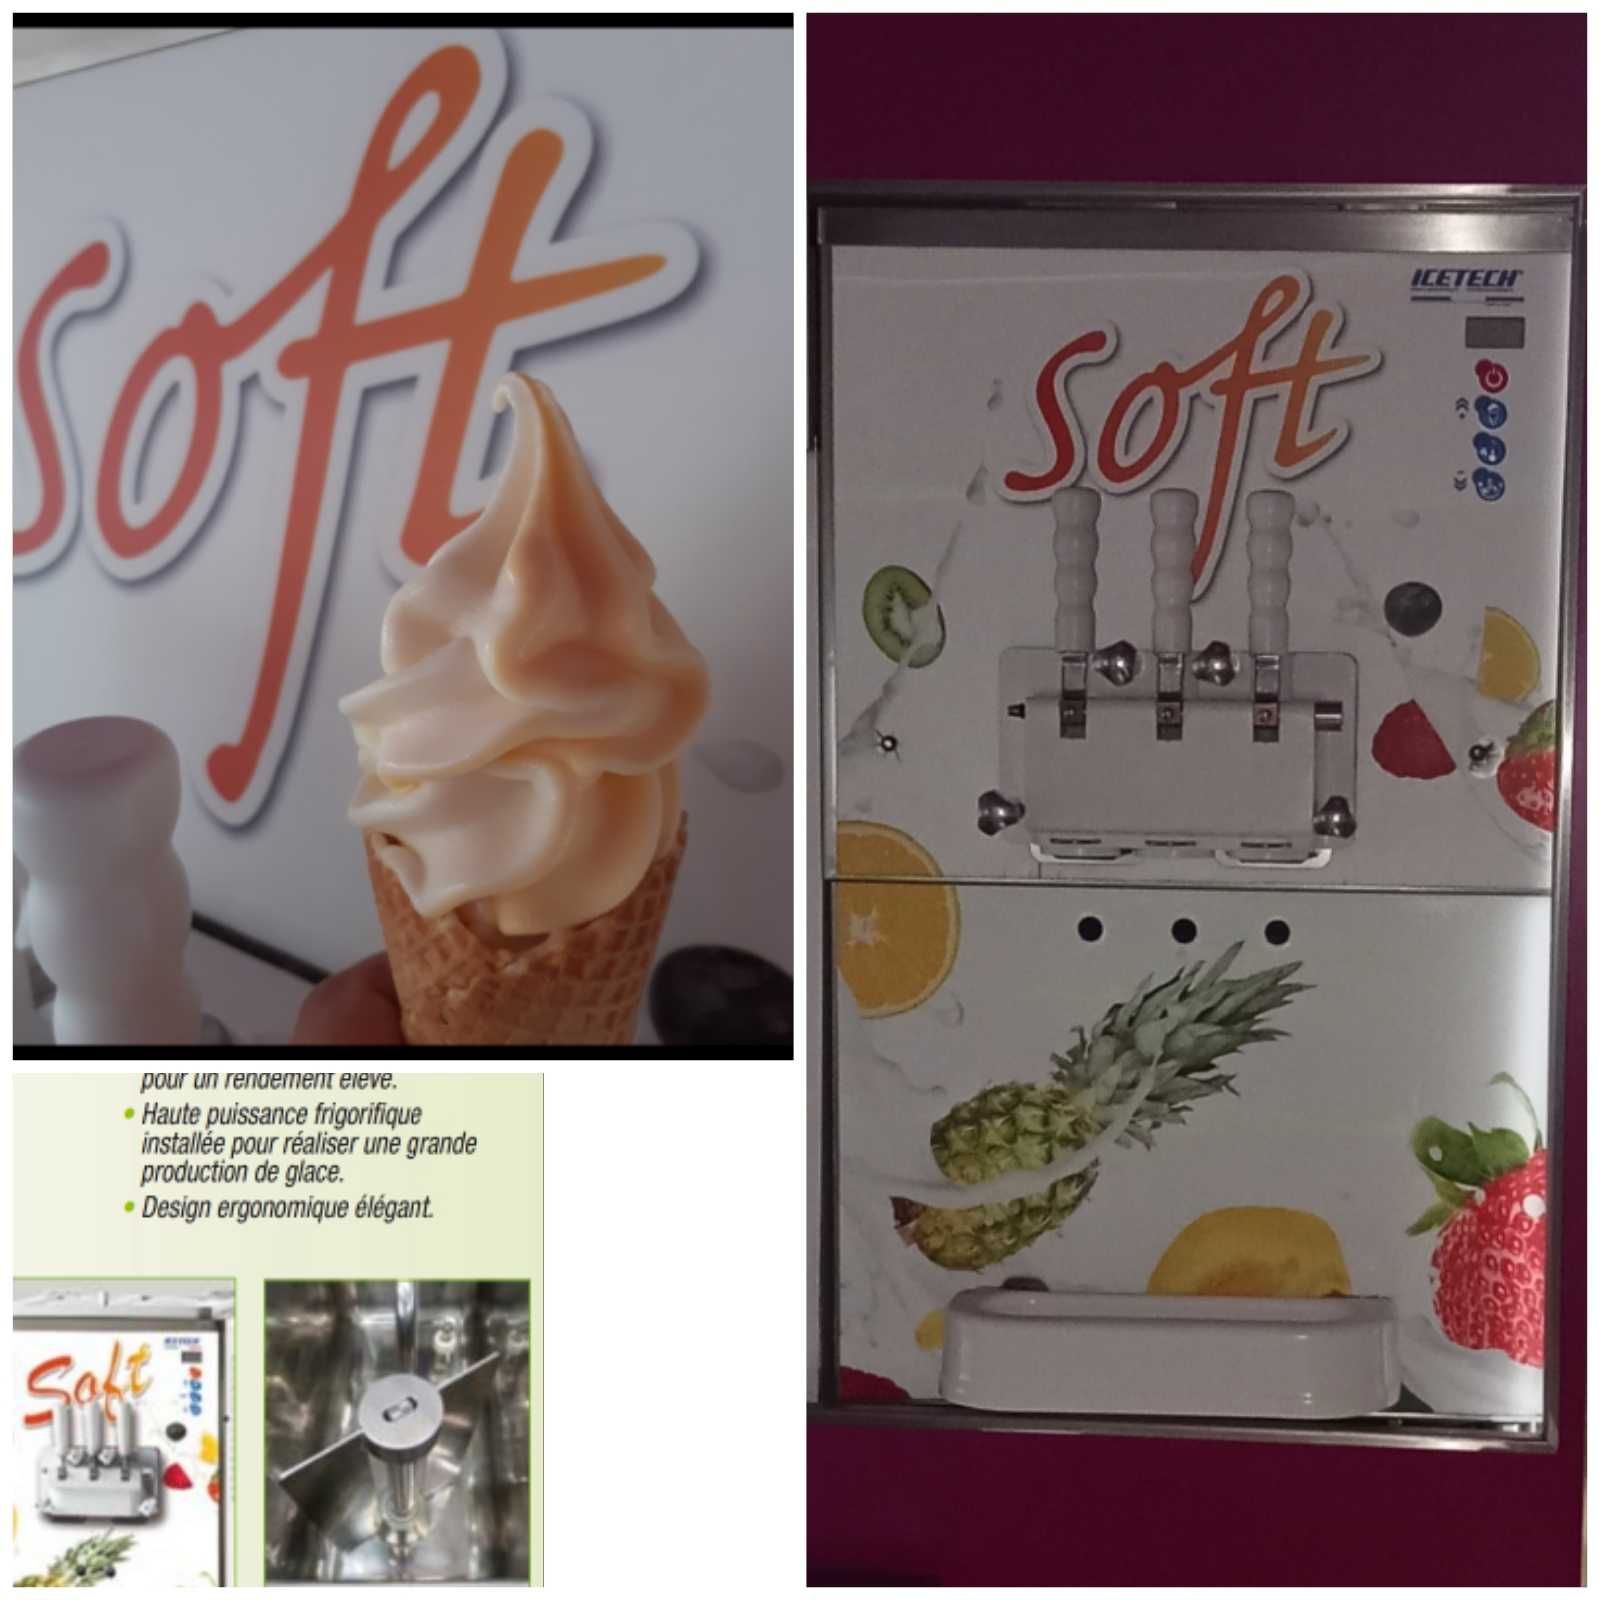 Máquina gelado soft ICETECH